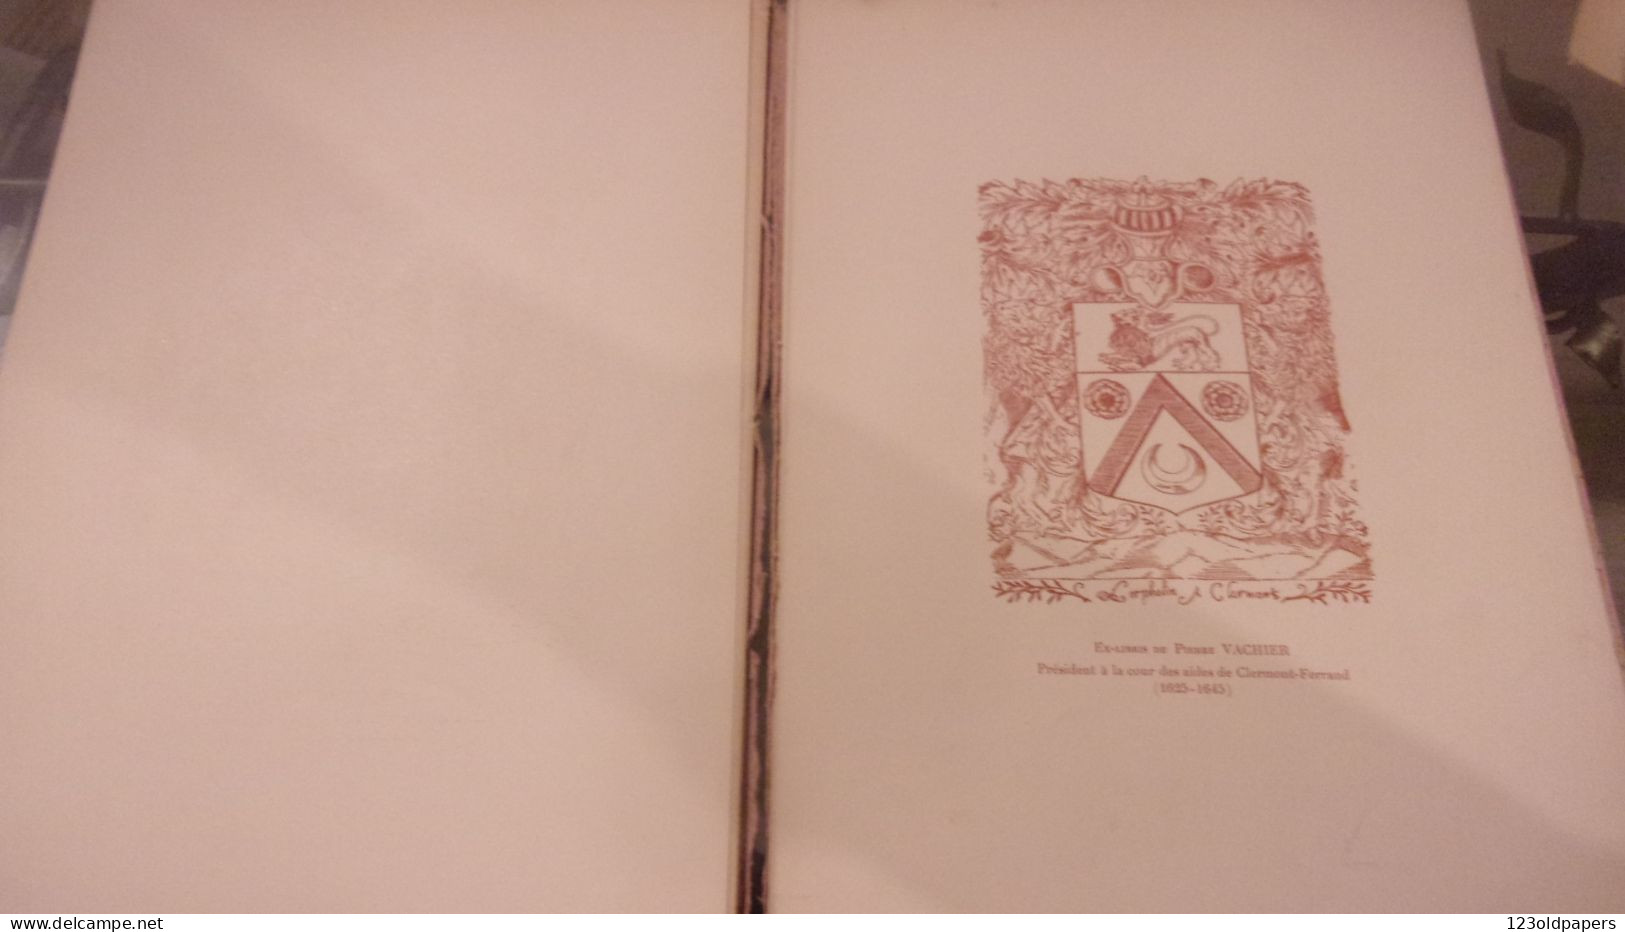 1903 TARDIEU (Ambroise).‎ ‎Dictionnaire des ex-libris de la Basse-Auvergne (Puy-de-Dôme)